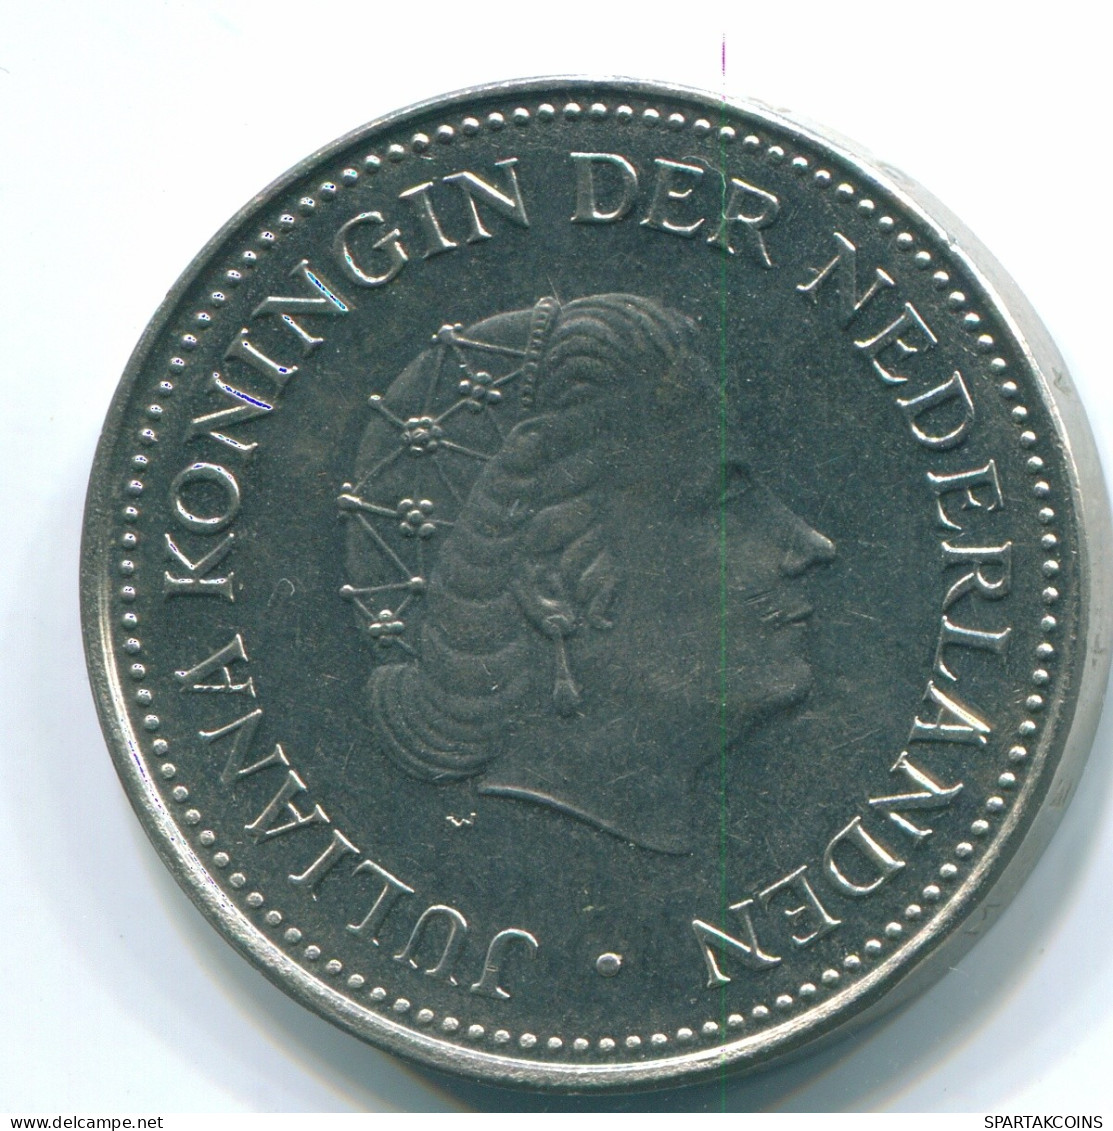 1 GULDEN 1971 NIEDERLÄNDISCHE ANTILLEN Nickel Koloniale Münze #S11977.D.A - Netherlands Antilles